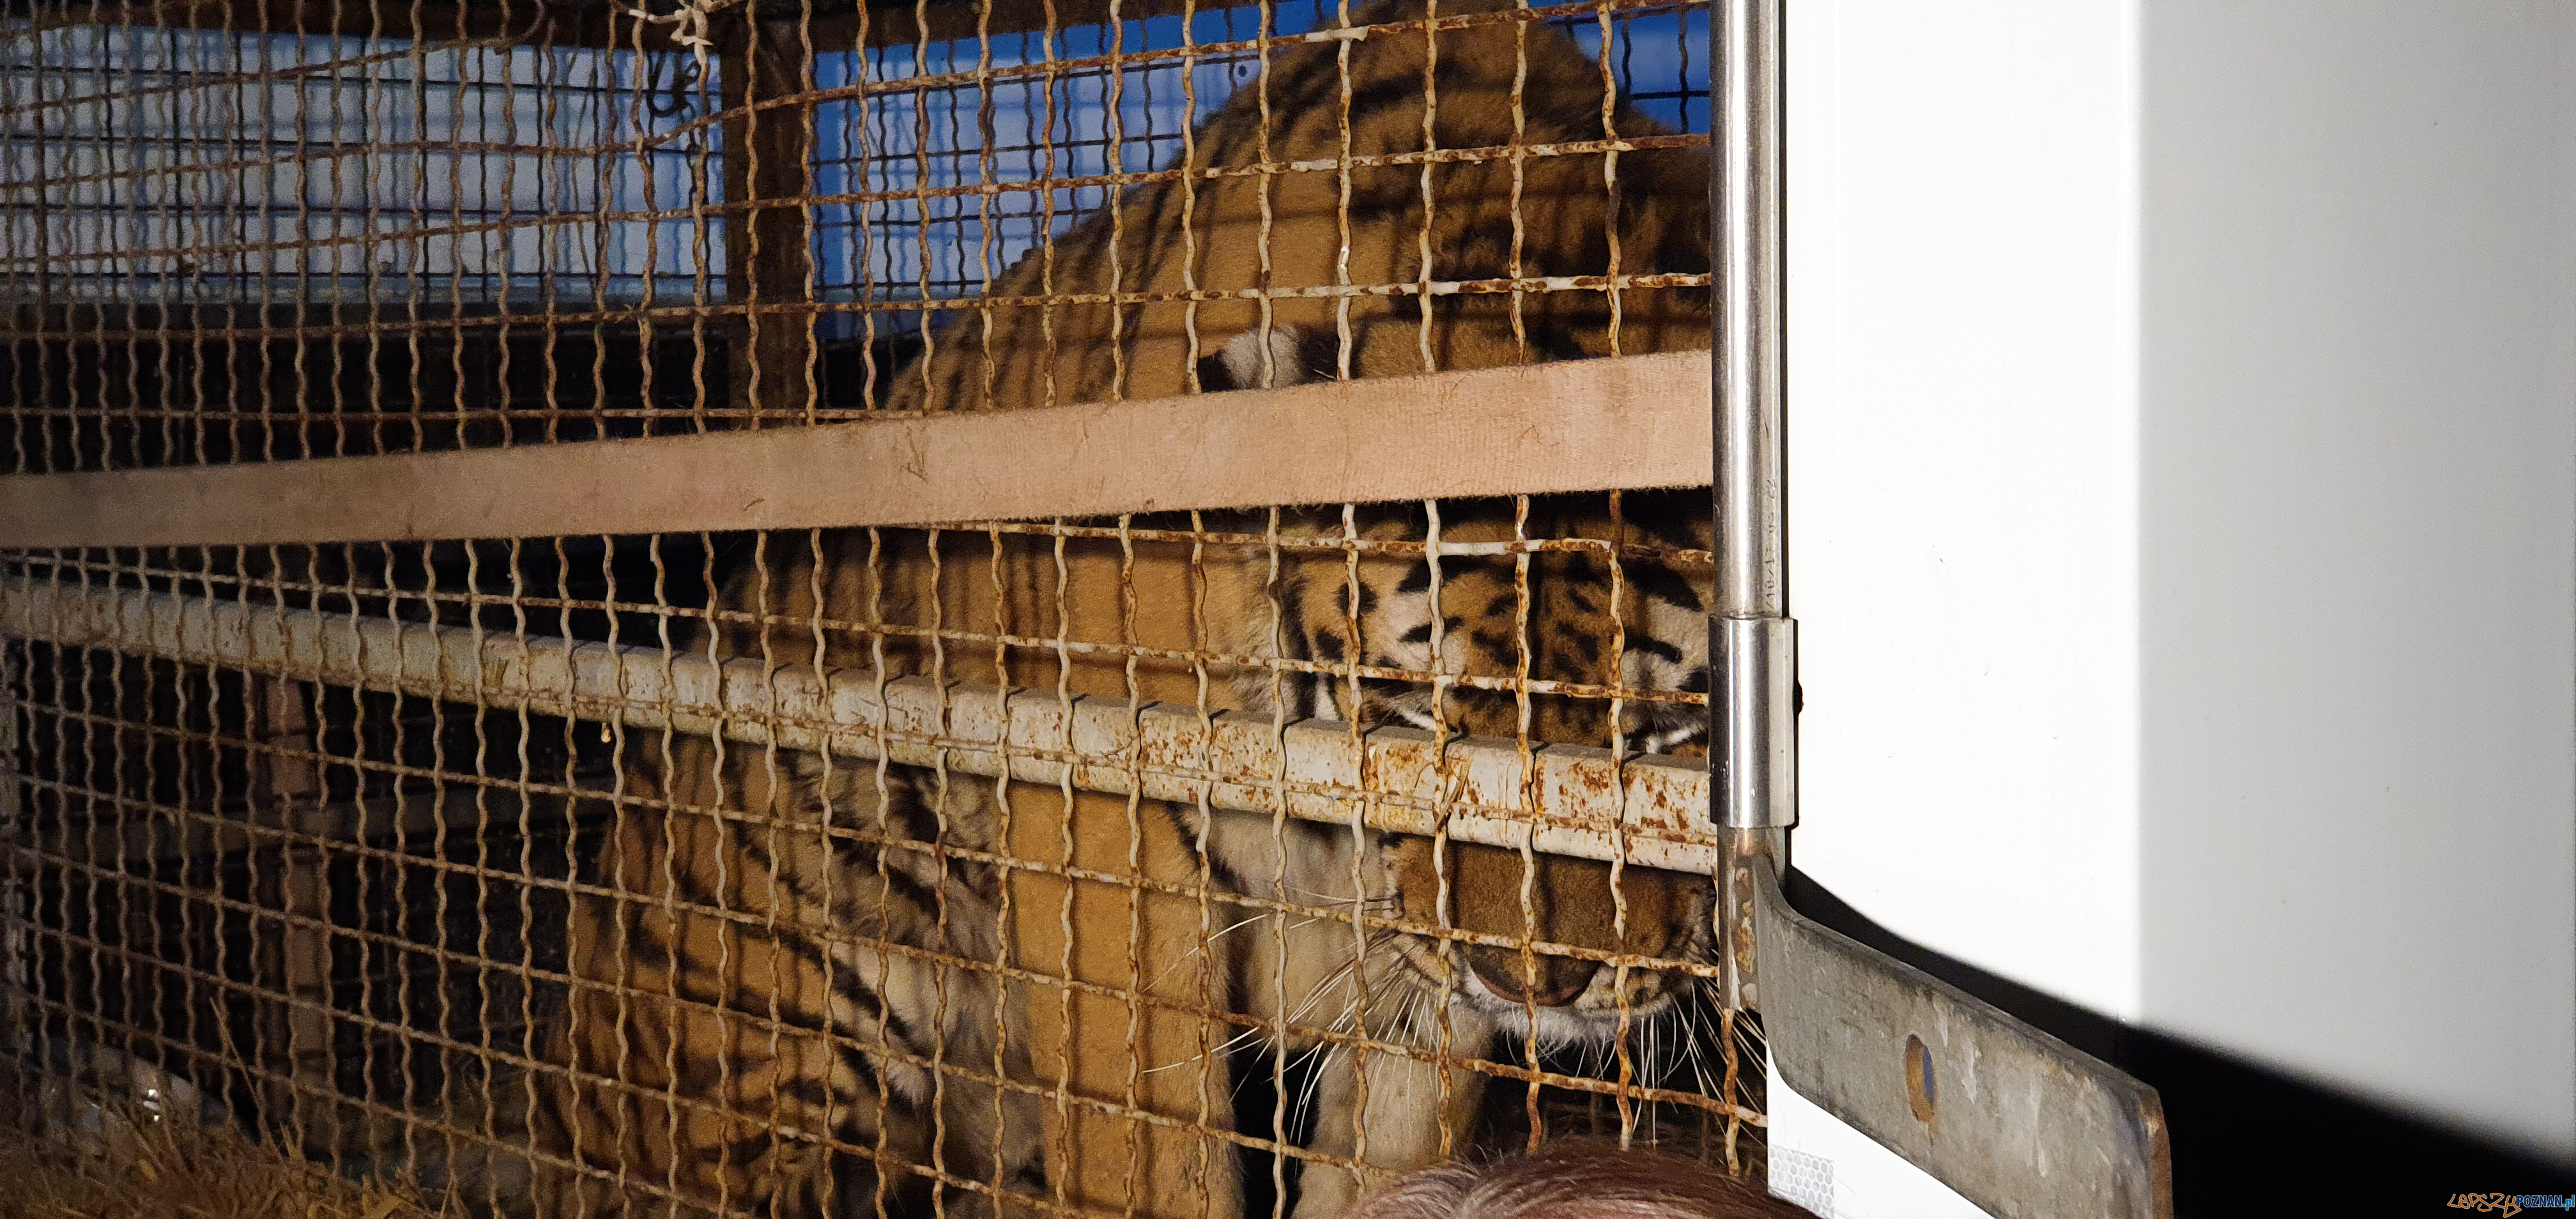 Tygrysy dotarły do poznania  Foto: materiały prasowe / UMP